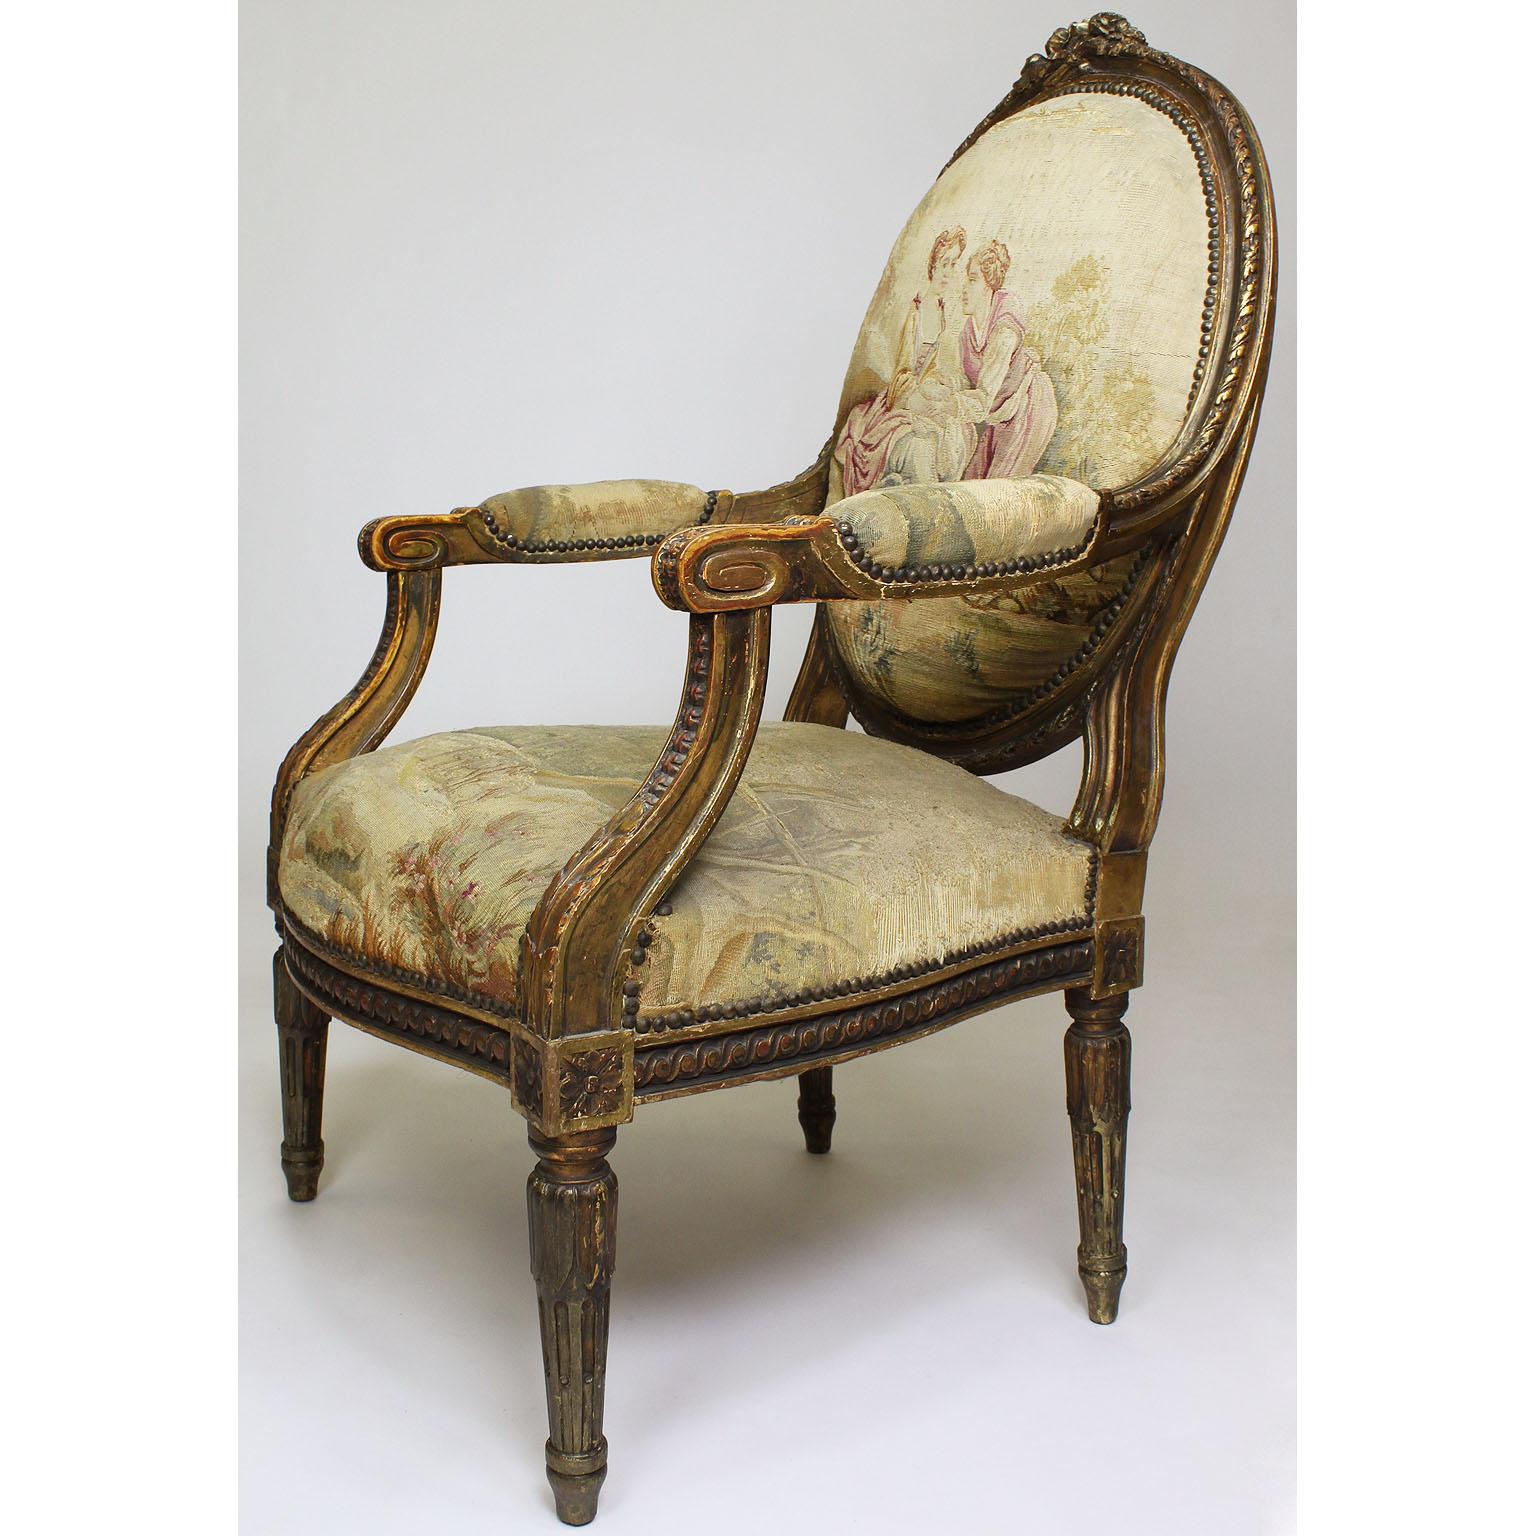 Ensemble de quatre fauteuils à la reine en bois doré sculpté et tapisserie d'Aubusson (usée) de style Louis XVI. Le dossier ovale à bandeau est surmonté d'une guirlande florale sculptée, d'une pointe de feuille et de bras rembourrés à enroulement